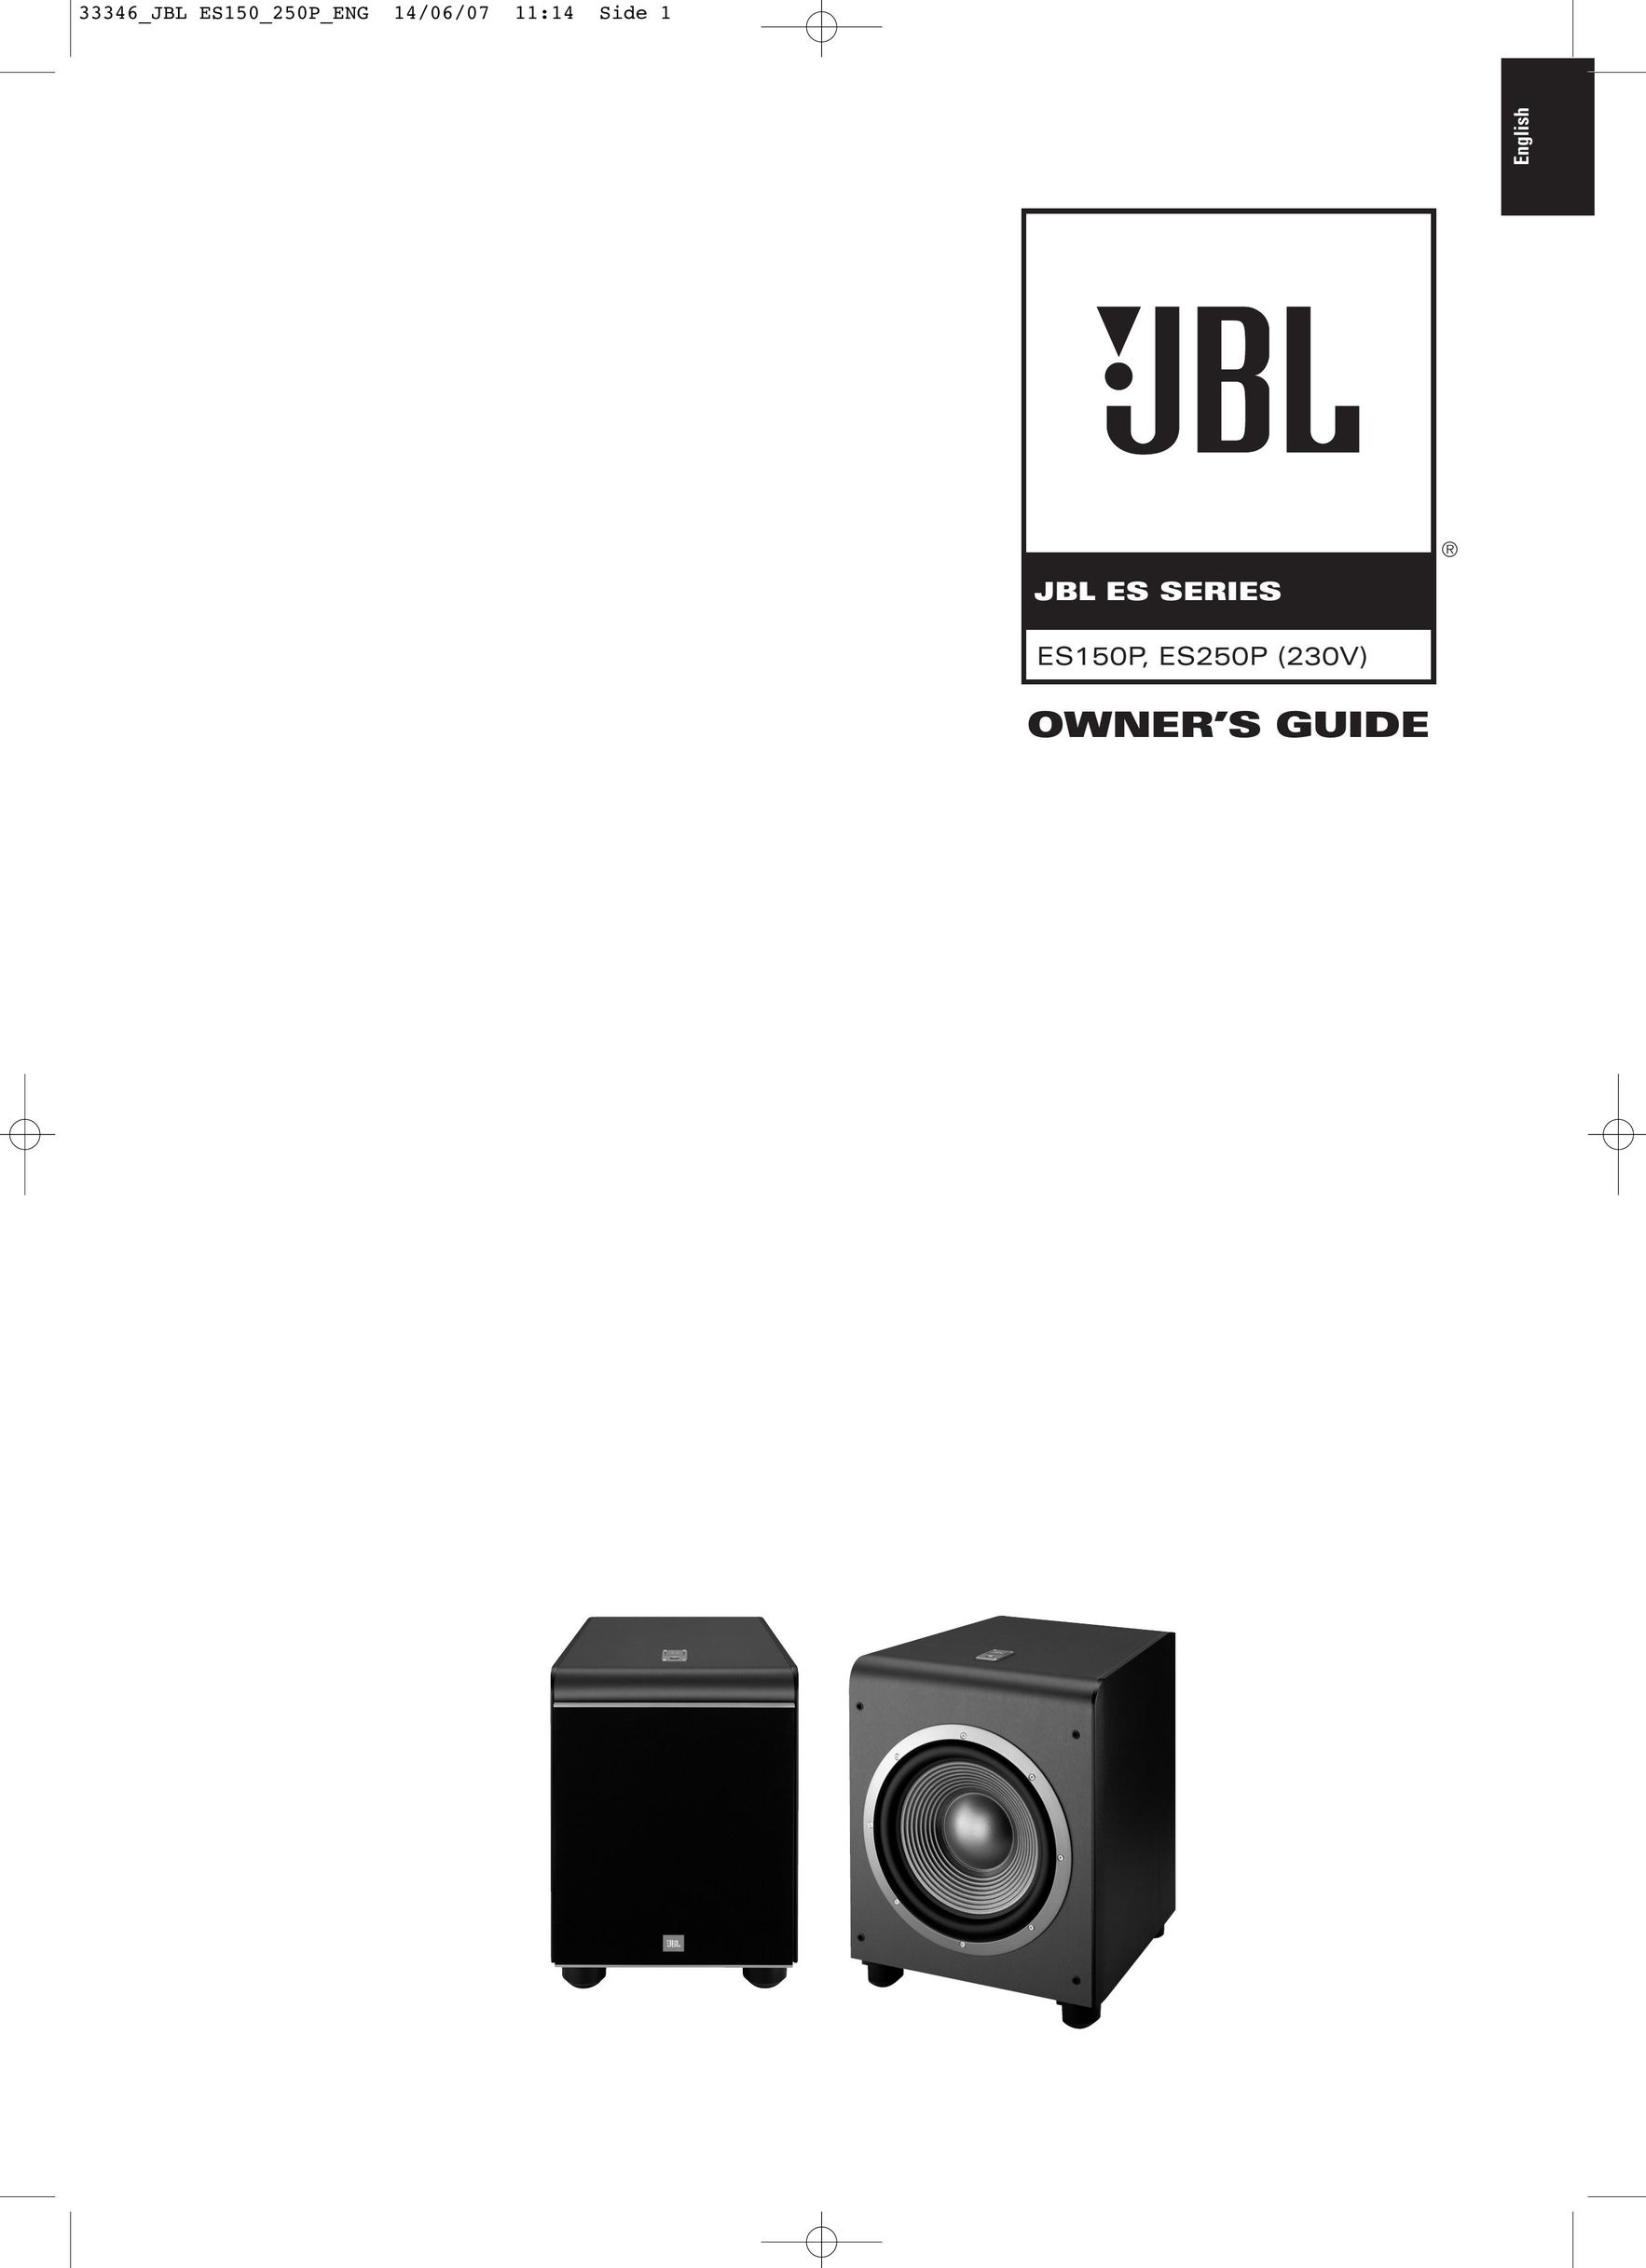 JBL ES150P Portable Speaker User Manual